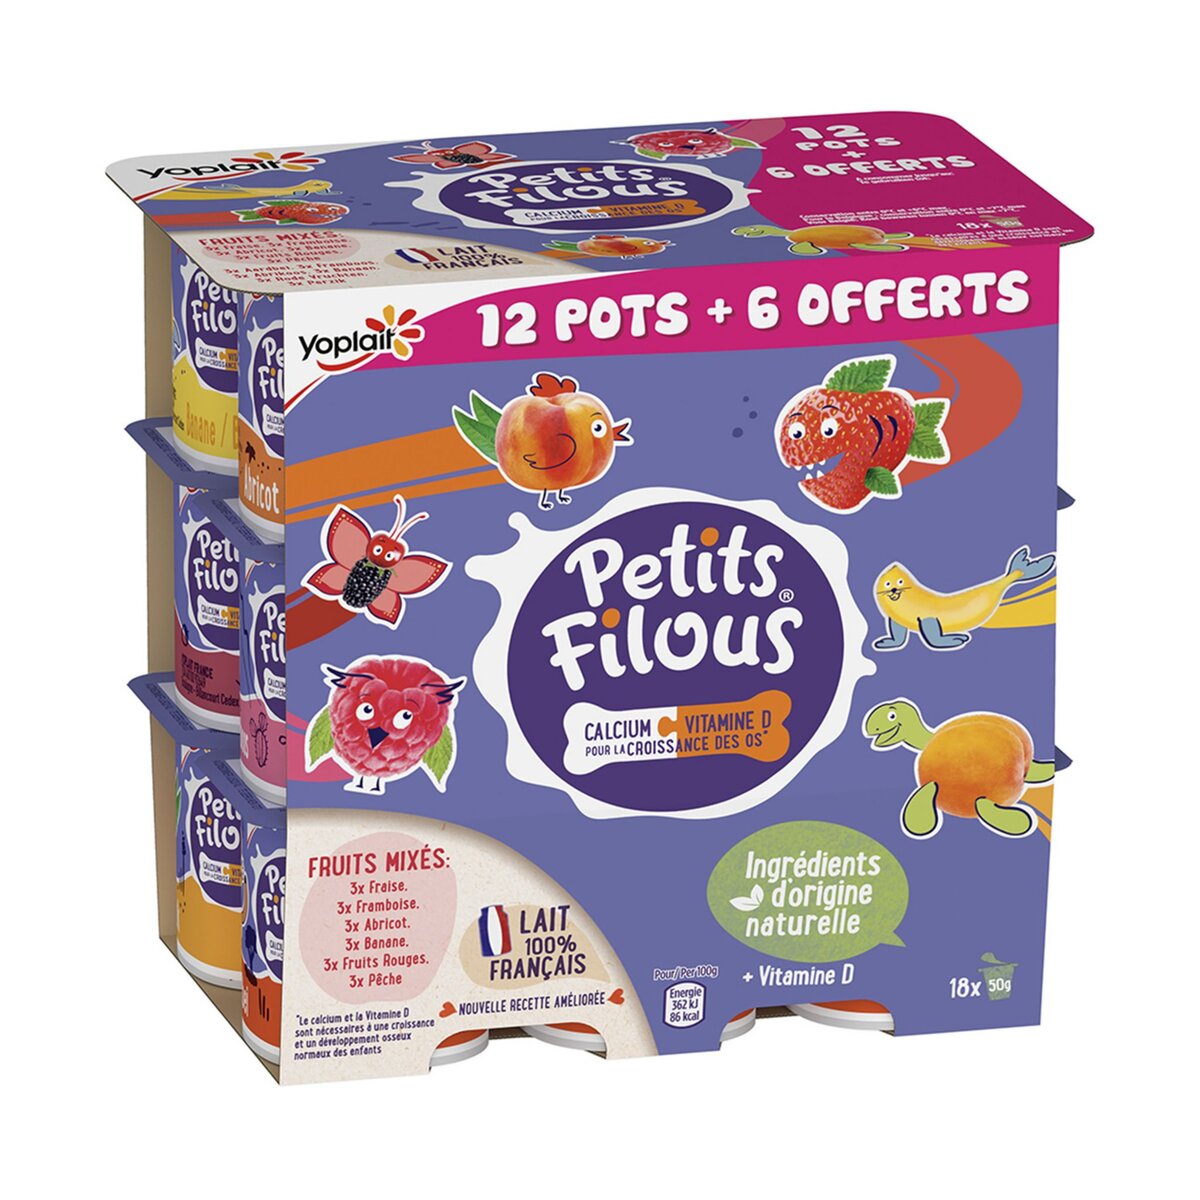 PETITS FILOUS Petits suisses aromatisés aux fruits 12+6 offerts 18x50g